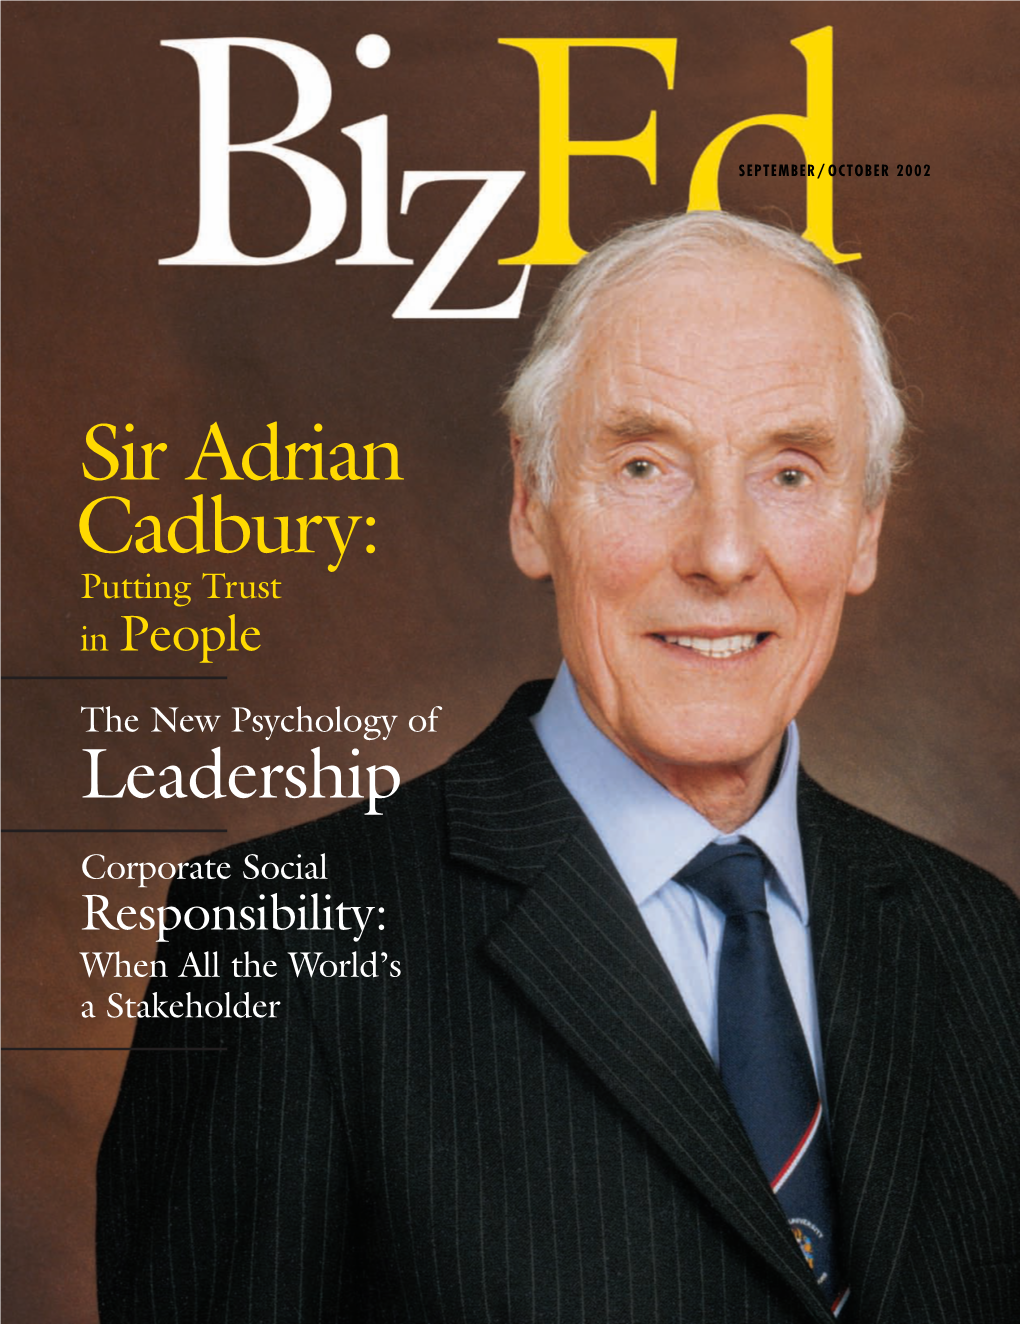 Bized, September/October 2002, Full Issue